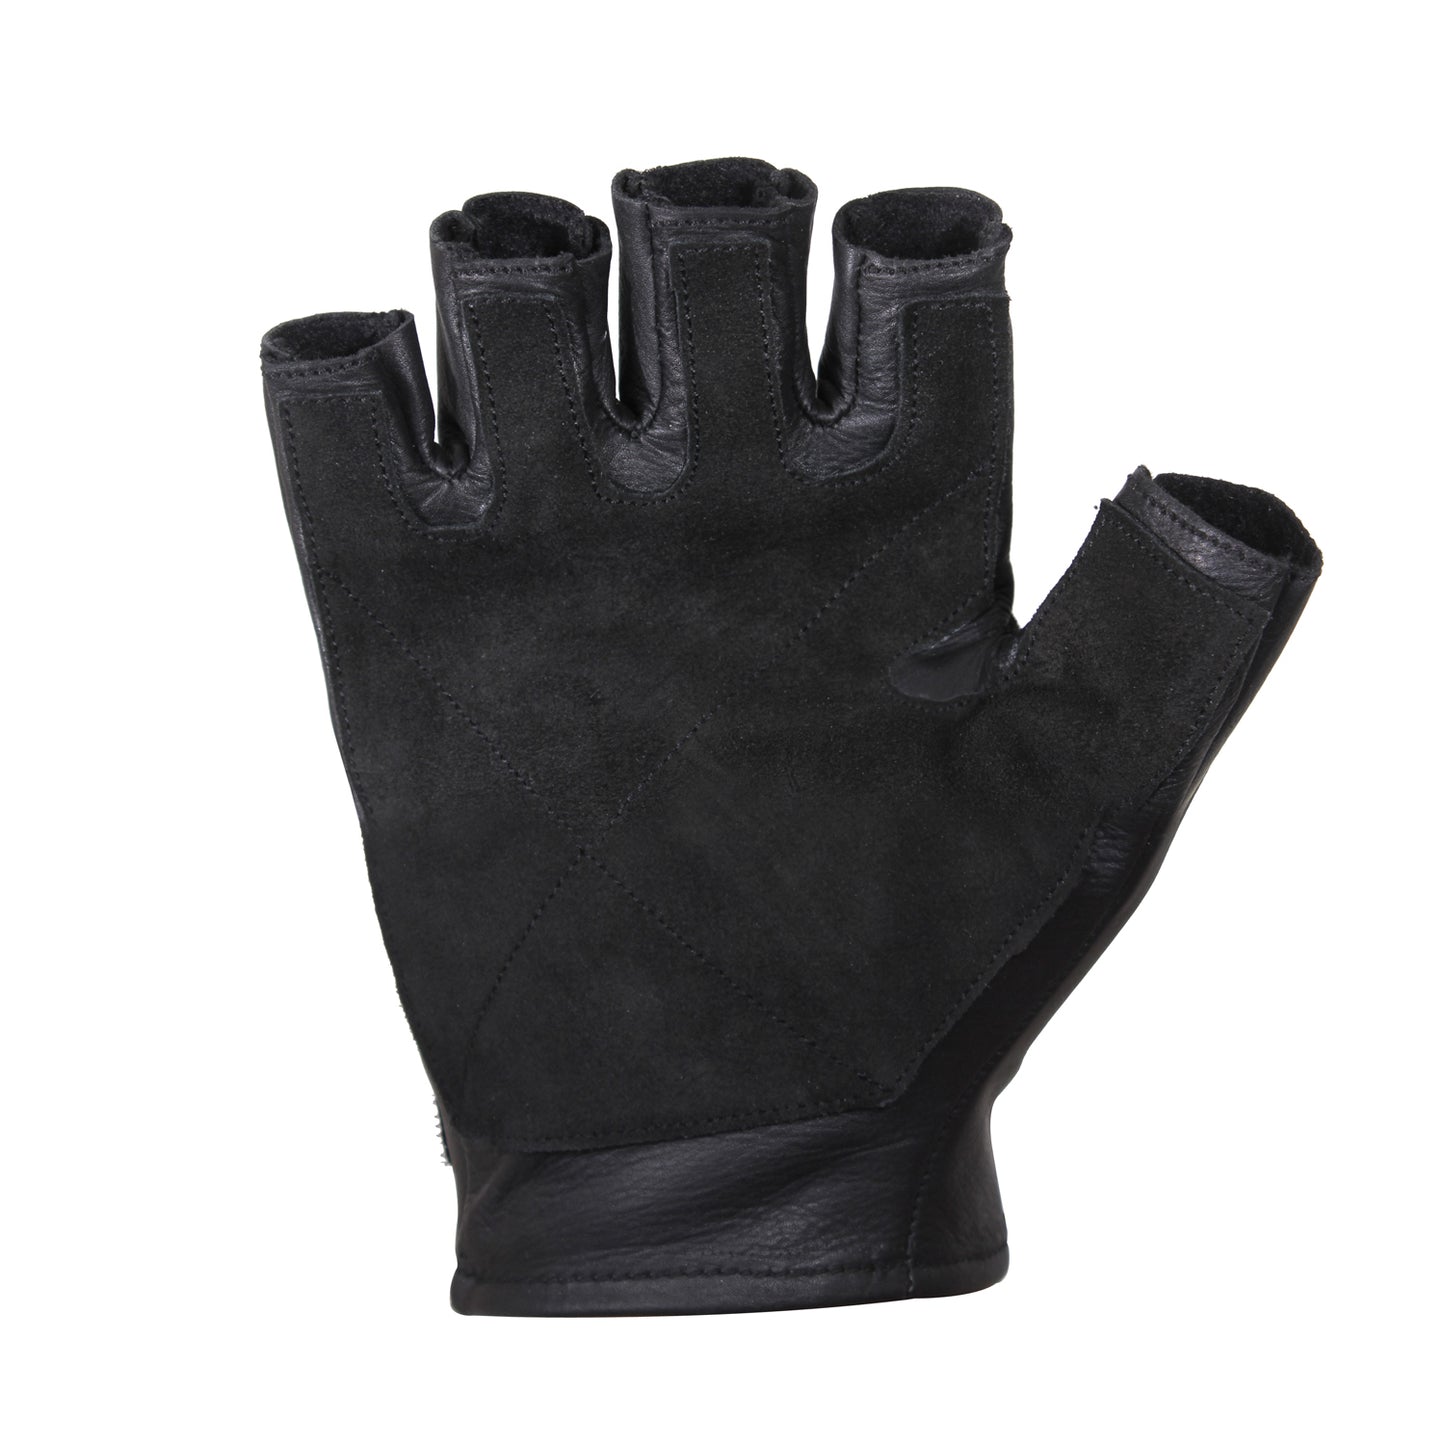 Fingerless Padded Tactical Gloves